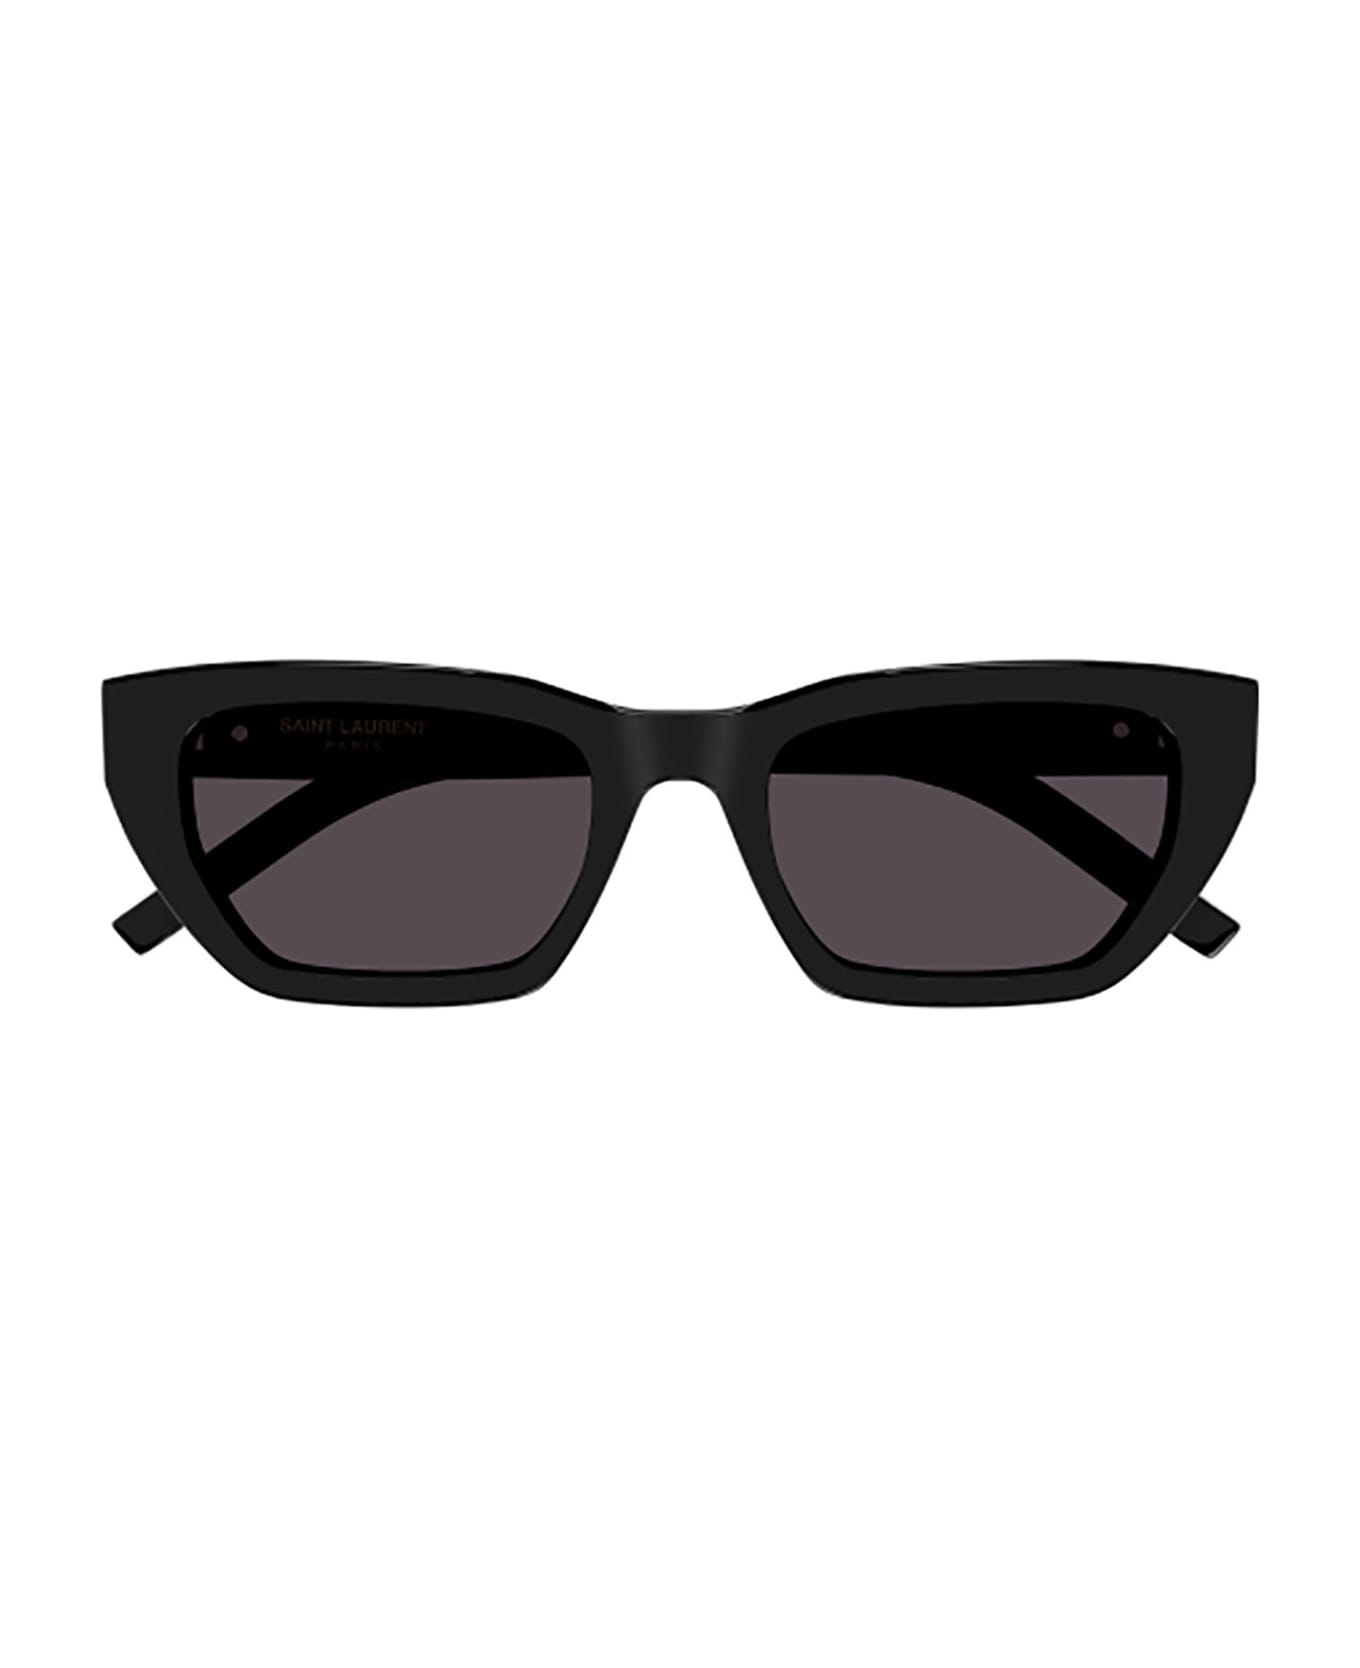 Saint Laurent Eyewear SL M127/F Sunglasses - Black Black Black